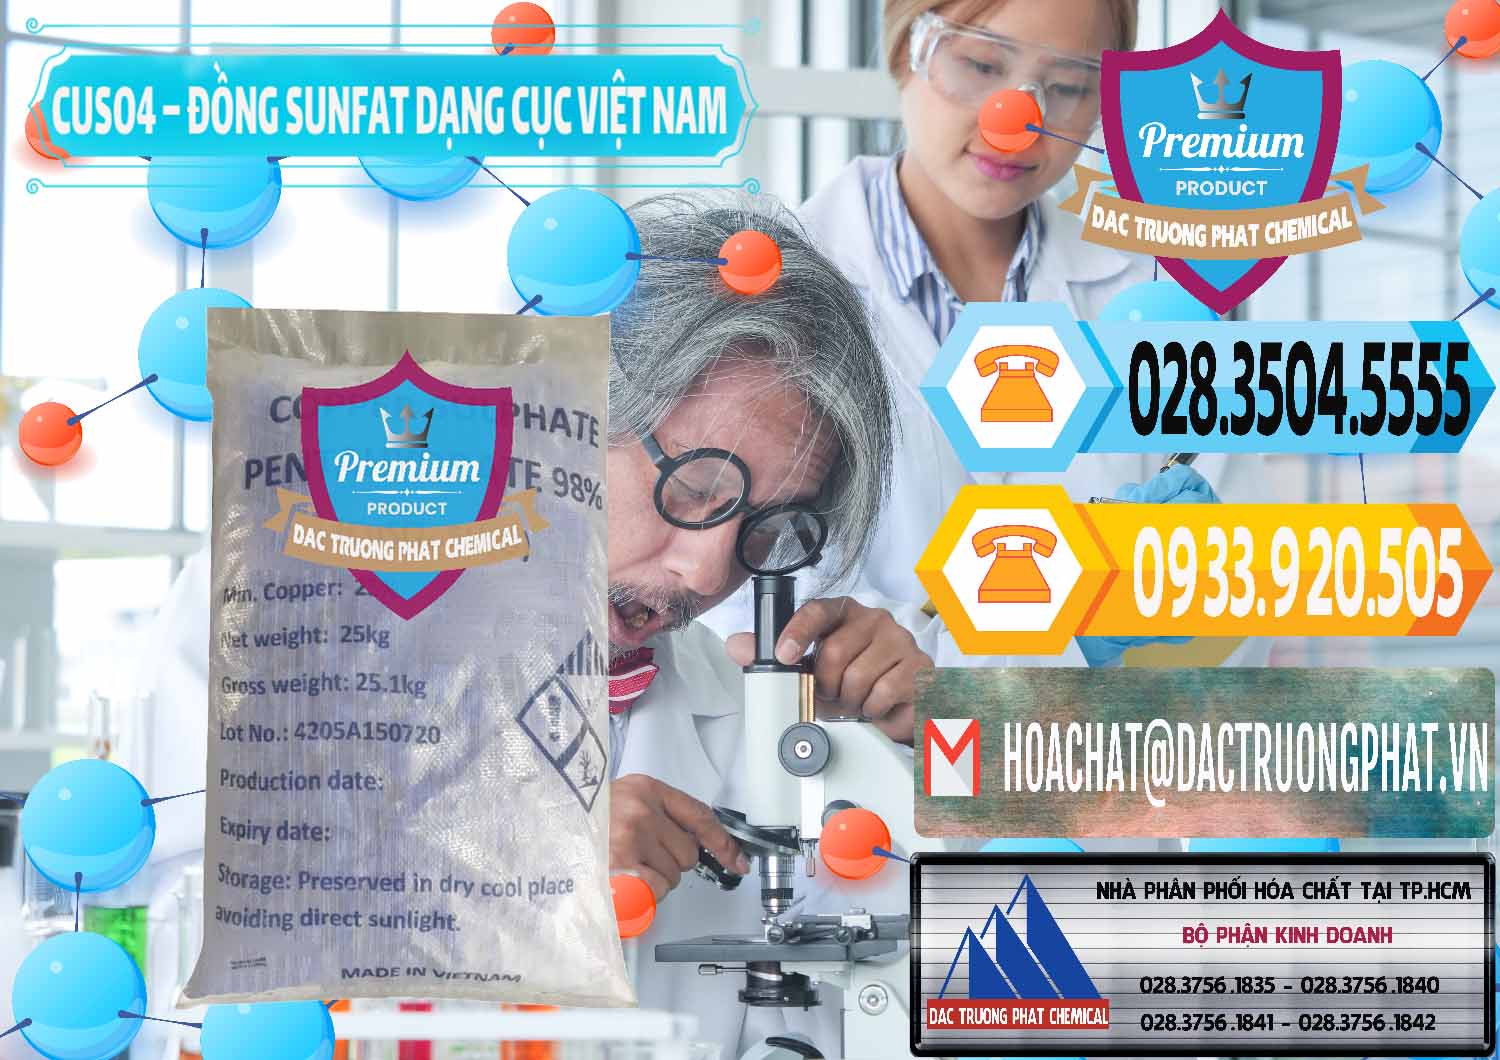 Công ty cung cấp _ kinh doanh CUSO4 – Đồng Sunfat Dạng Cục Việt Nam - 0303 - Công ty bán _ phân phối hóa chất tại TP.HCM - hoachattayrua.net